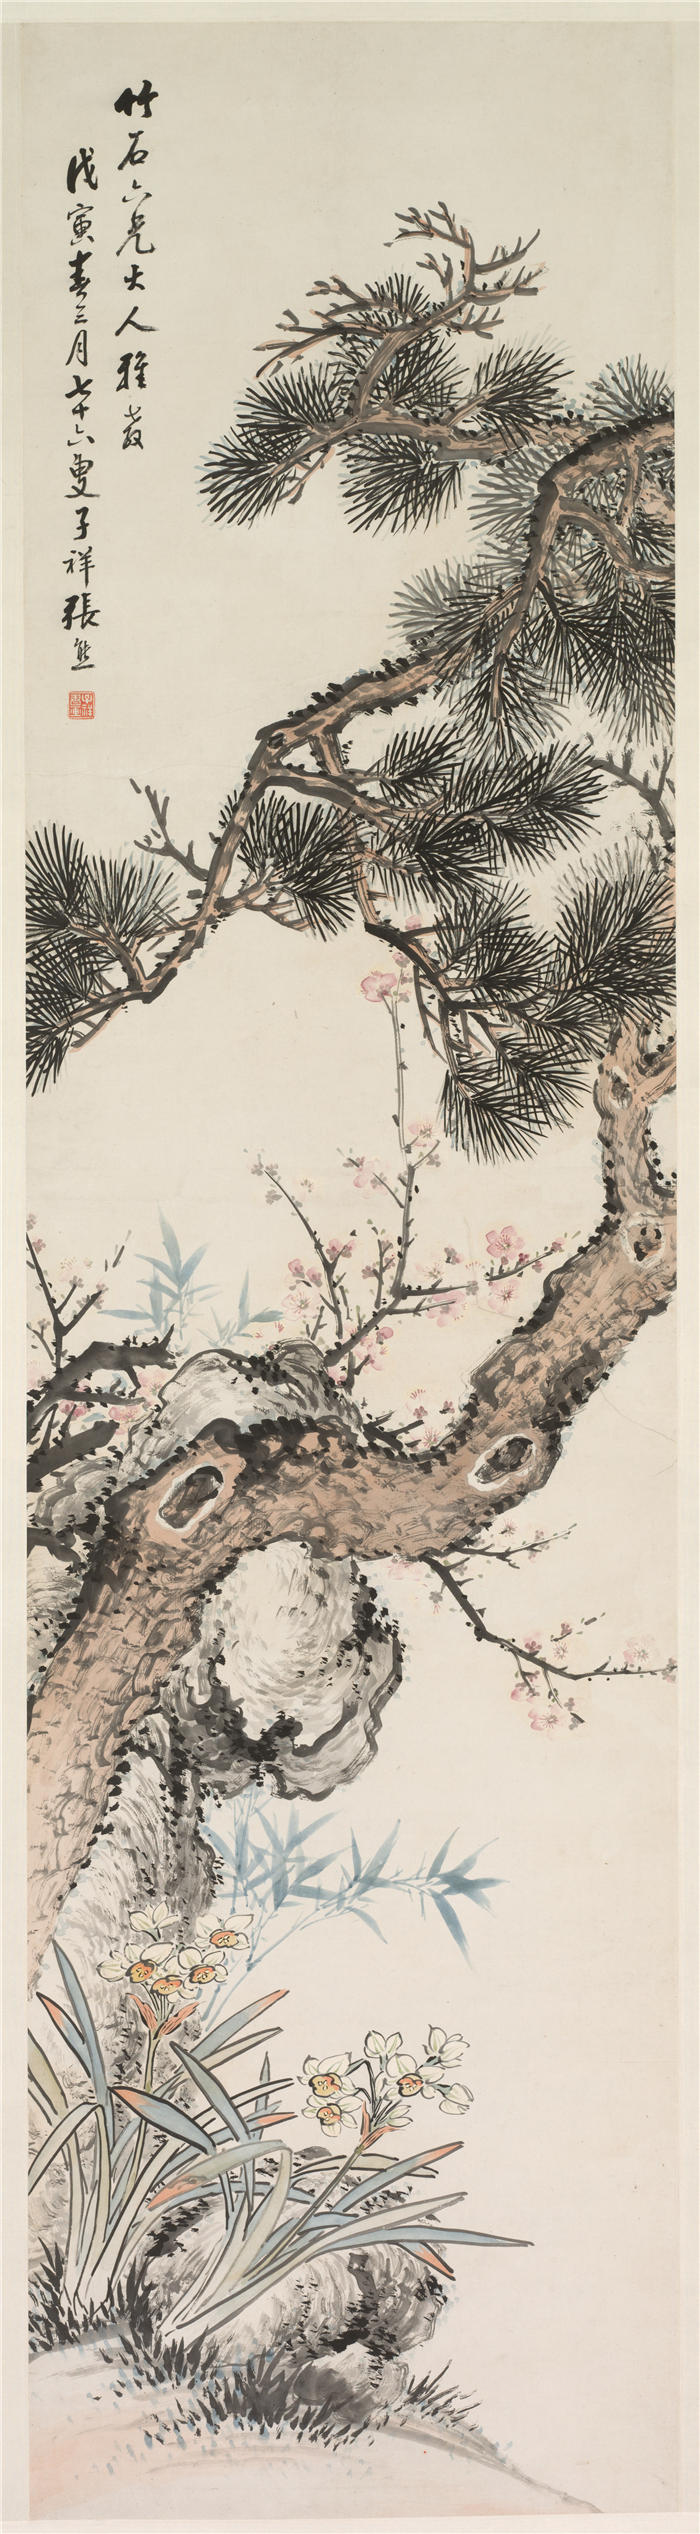 中国清朝画家张熊-《松石图》 高清国画作品